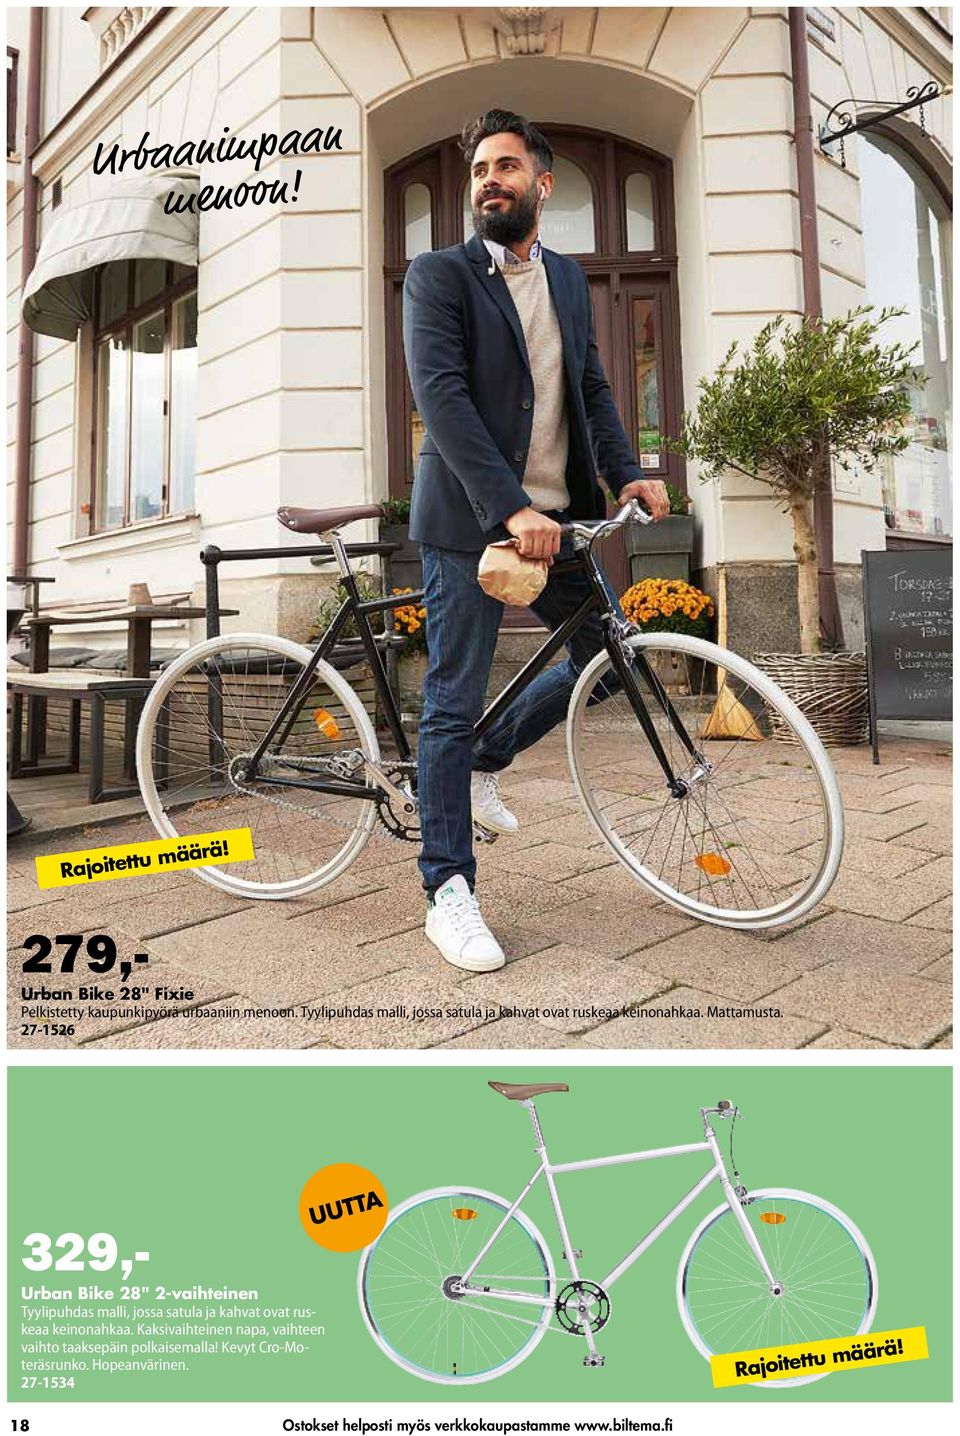 27-1526 329,- Urban Bike 28" 2-vaihteinen Tyylipuhdas malli, jossa satula ja kahvat ovat ruskeaa keinonahkaa.